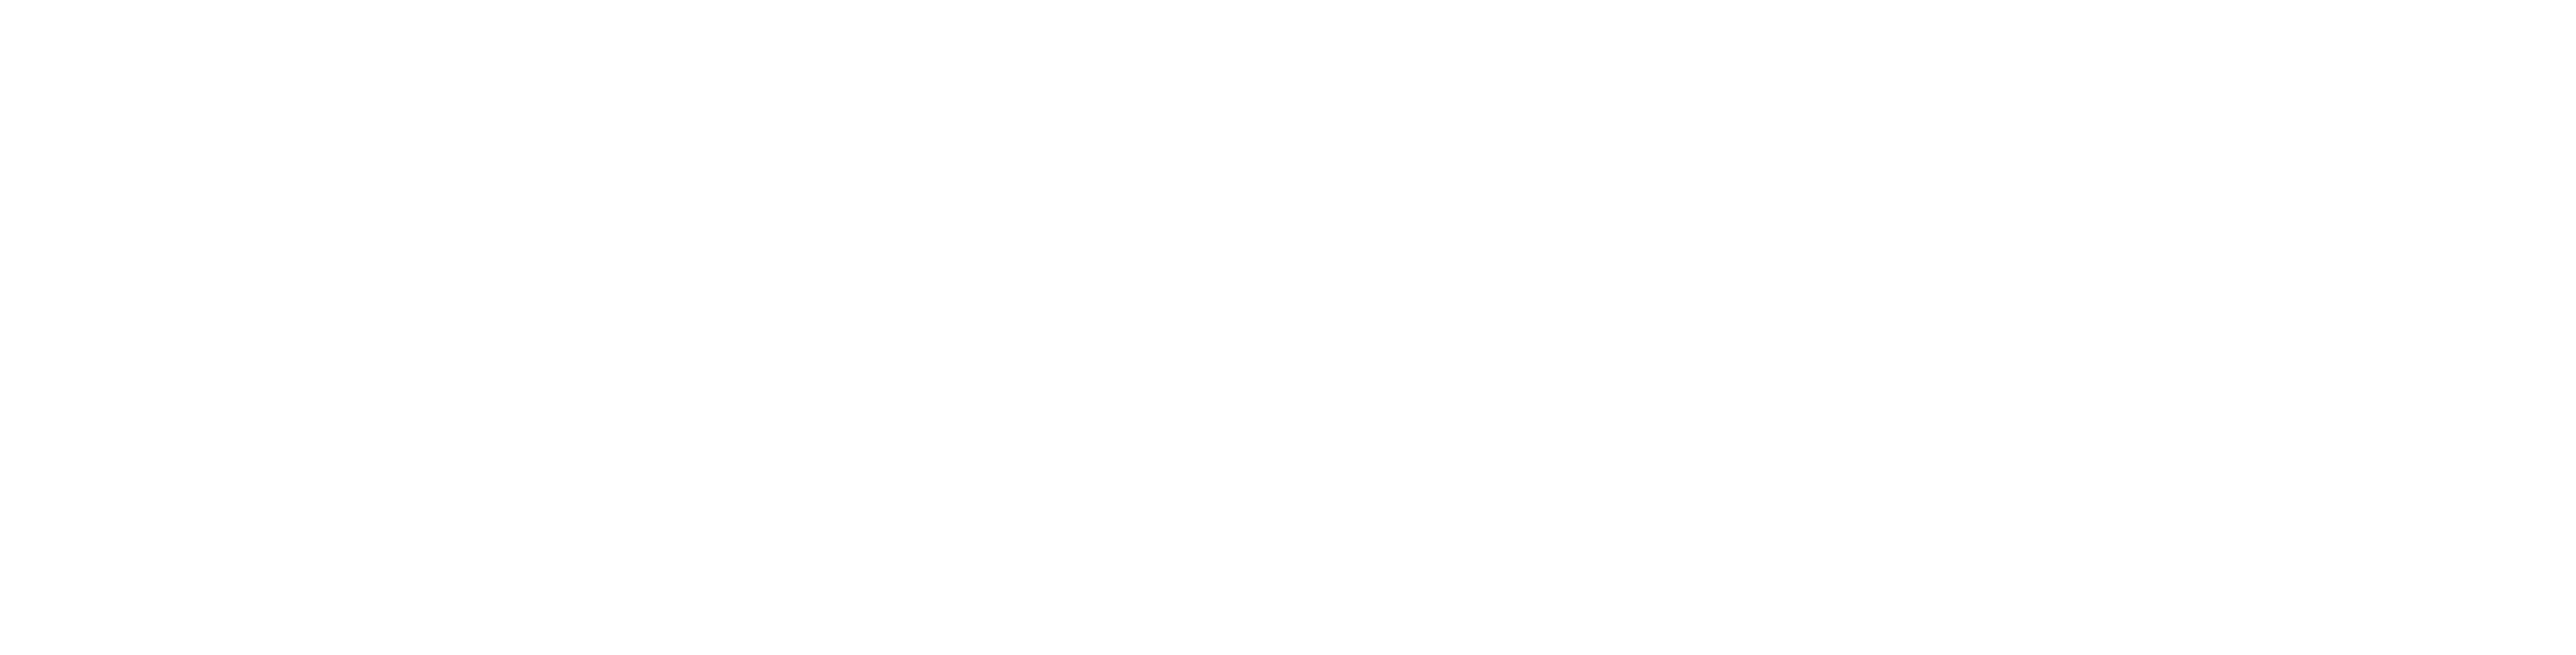 iPaymu Logo